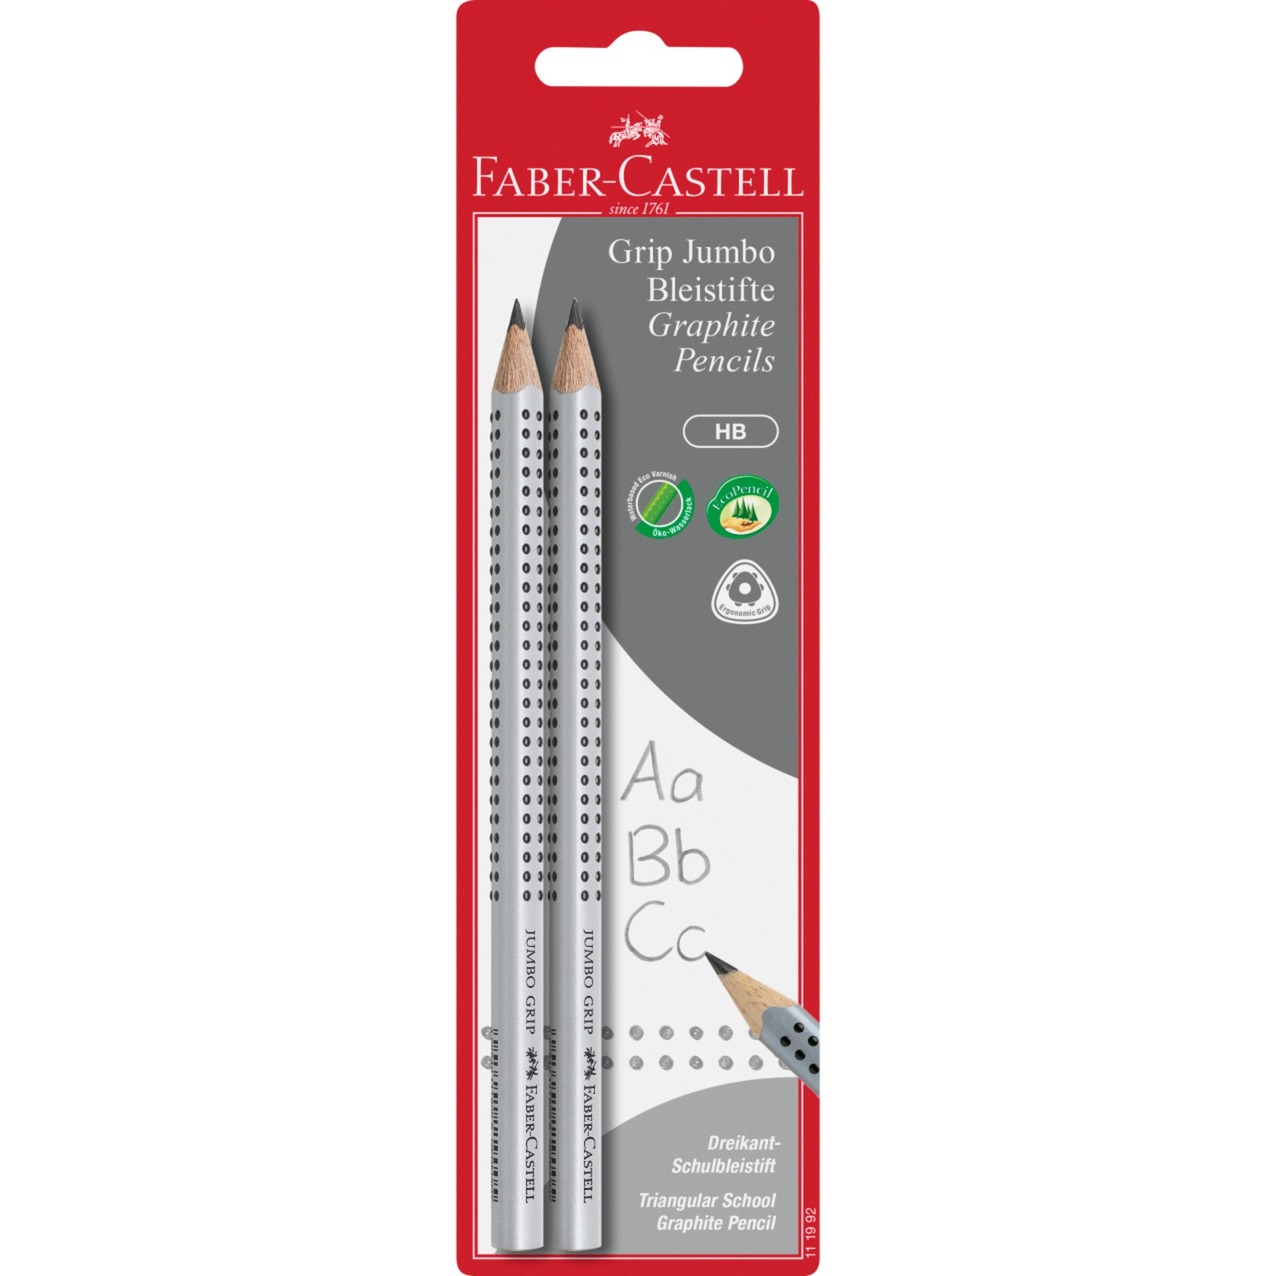 Image of Alternate - Jumbo Grip Bleistift, HB, 2er, Set online einkaufen bei Alternate